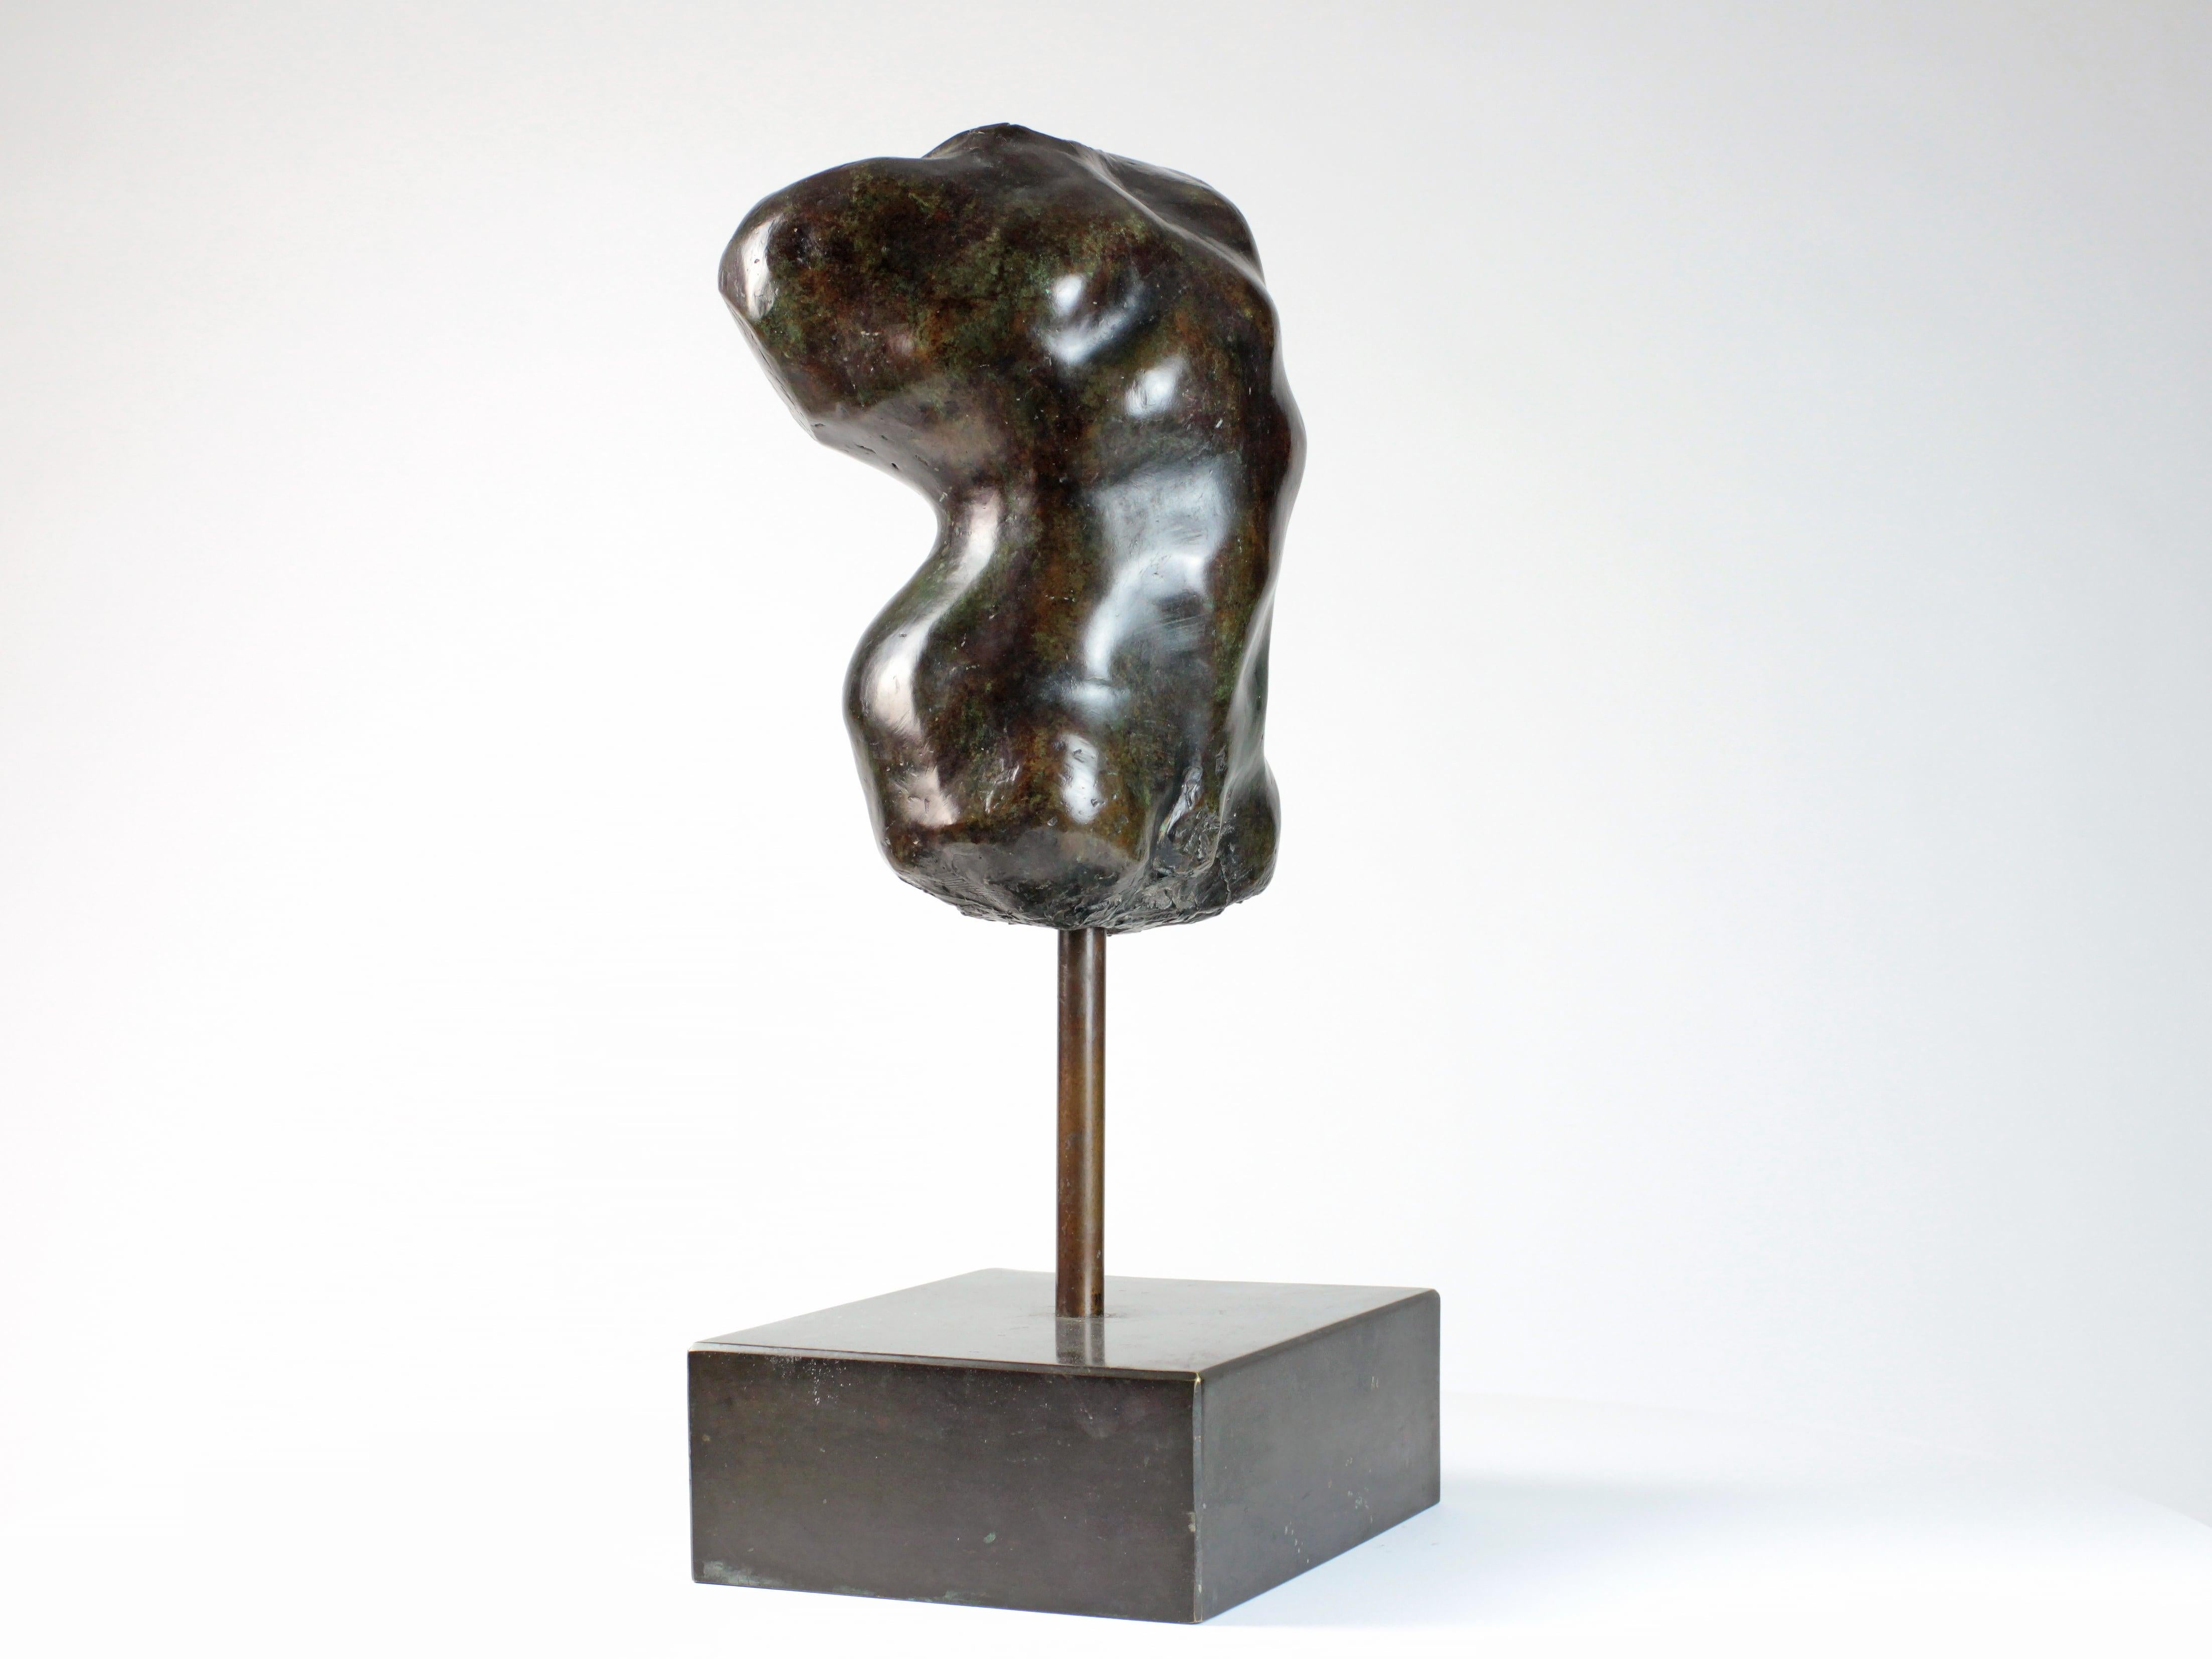 Hermaphrodite I est une sculpture en bronze de l'artiste contemporain Yann Guillon, dont les dimensions sont 31 cm × 25 cm × 20 cm (12,2 × 9,8 × 7,9 in). Dimensions de la base en métal : 10 cm x 31 cm x 24 cm (3.9 x 12.2 x 9.4 in). Hauteur de la